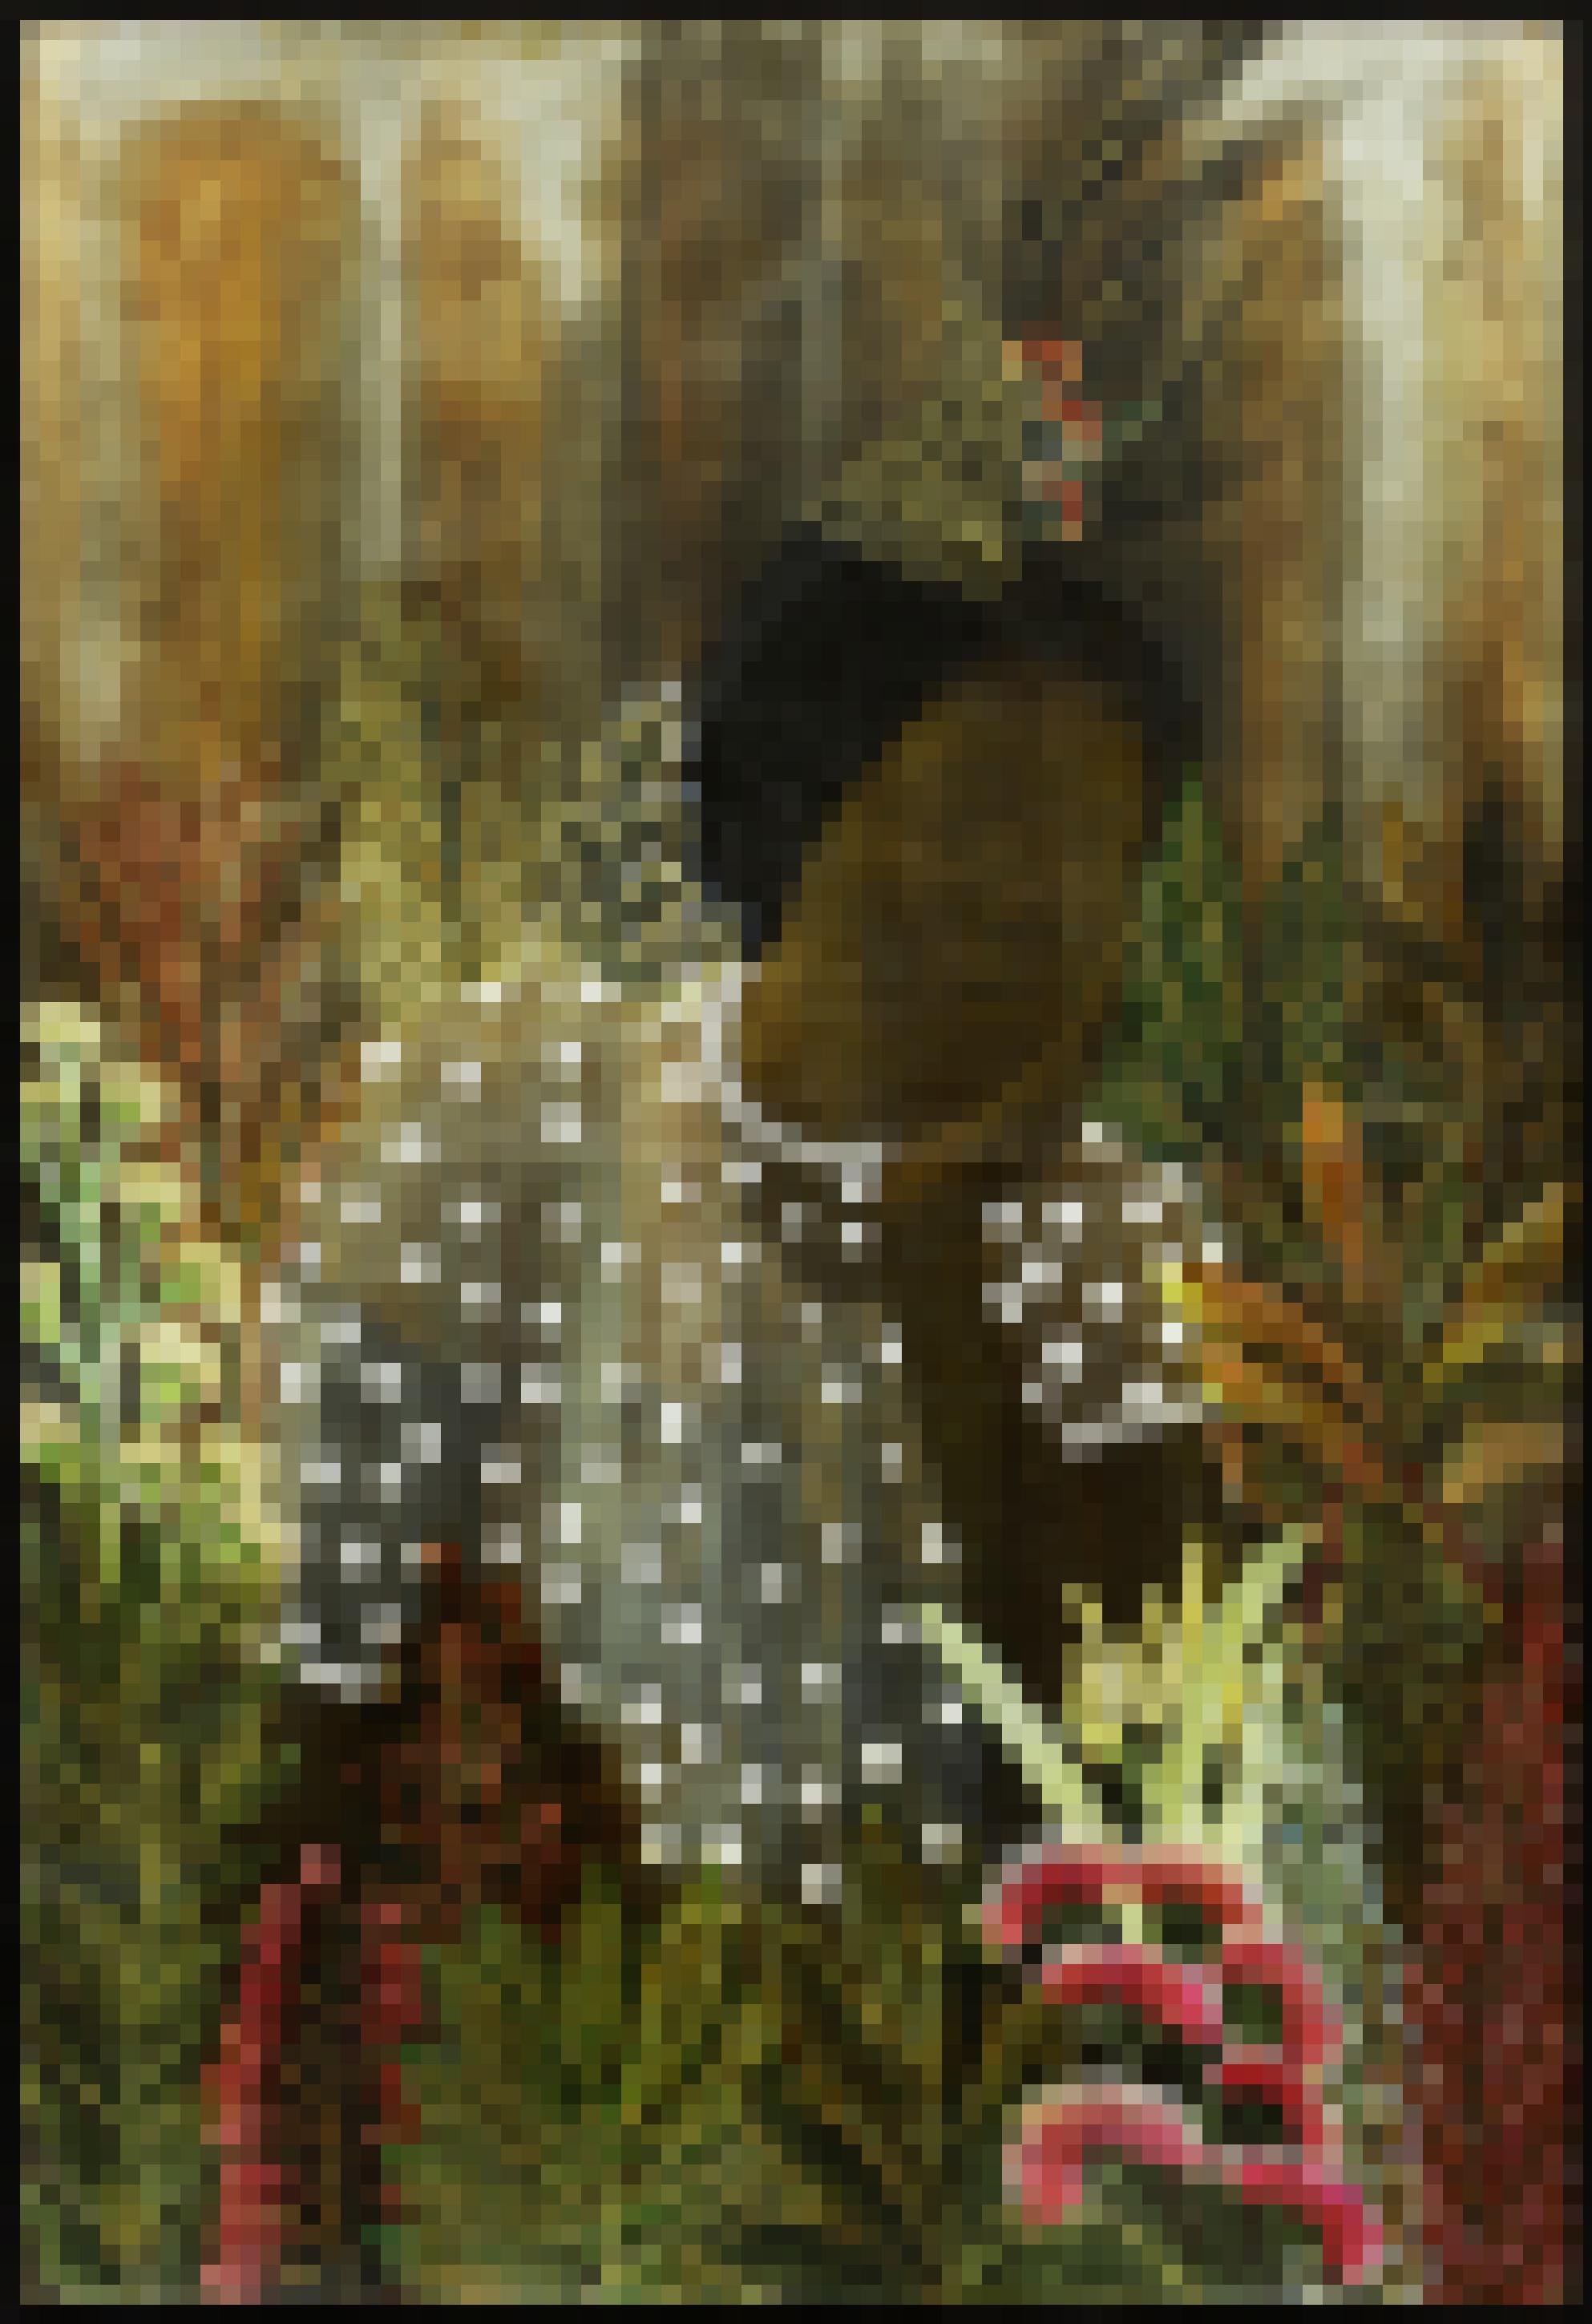 Das Bild von Tuli Mekondjo zeigt eine Frauenfigur